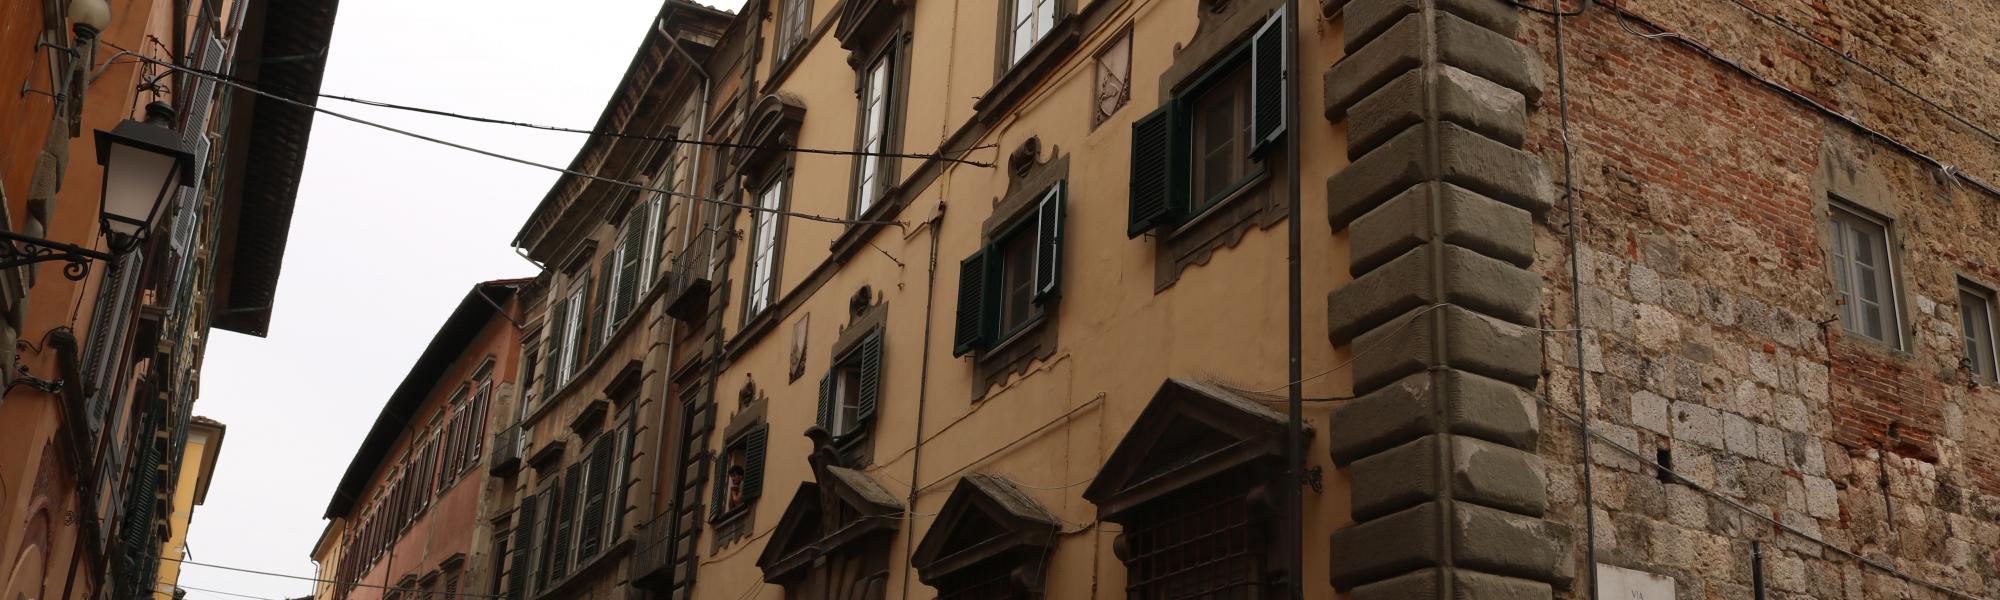 Facciata - Palazzo Salviati